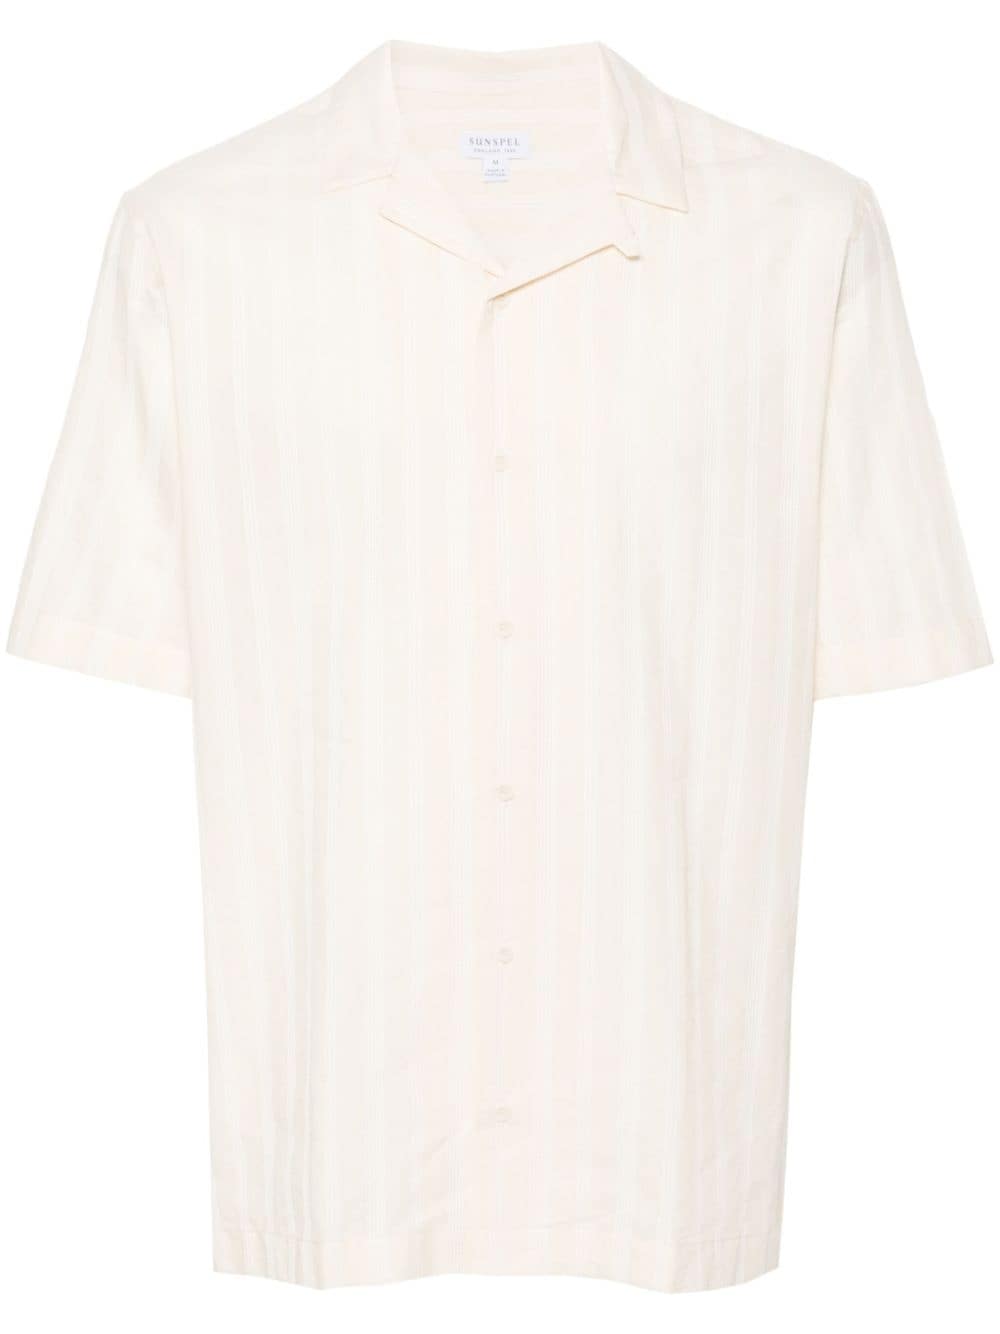 Sunspel embroidered-stripes cotton shirt - Neutrals von Sunspel